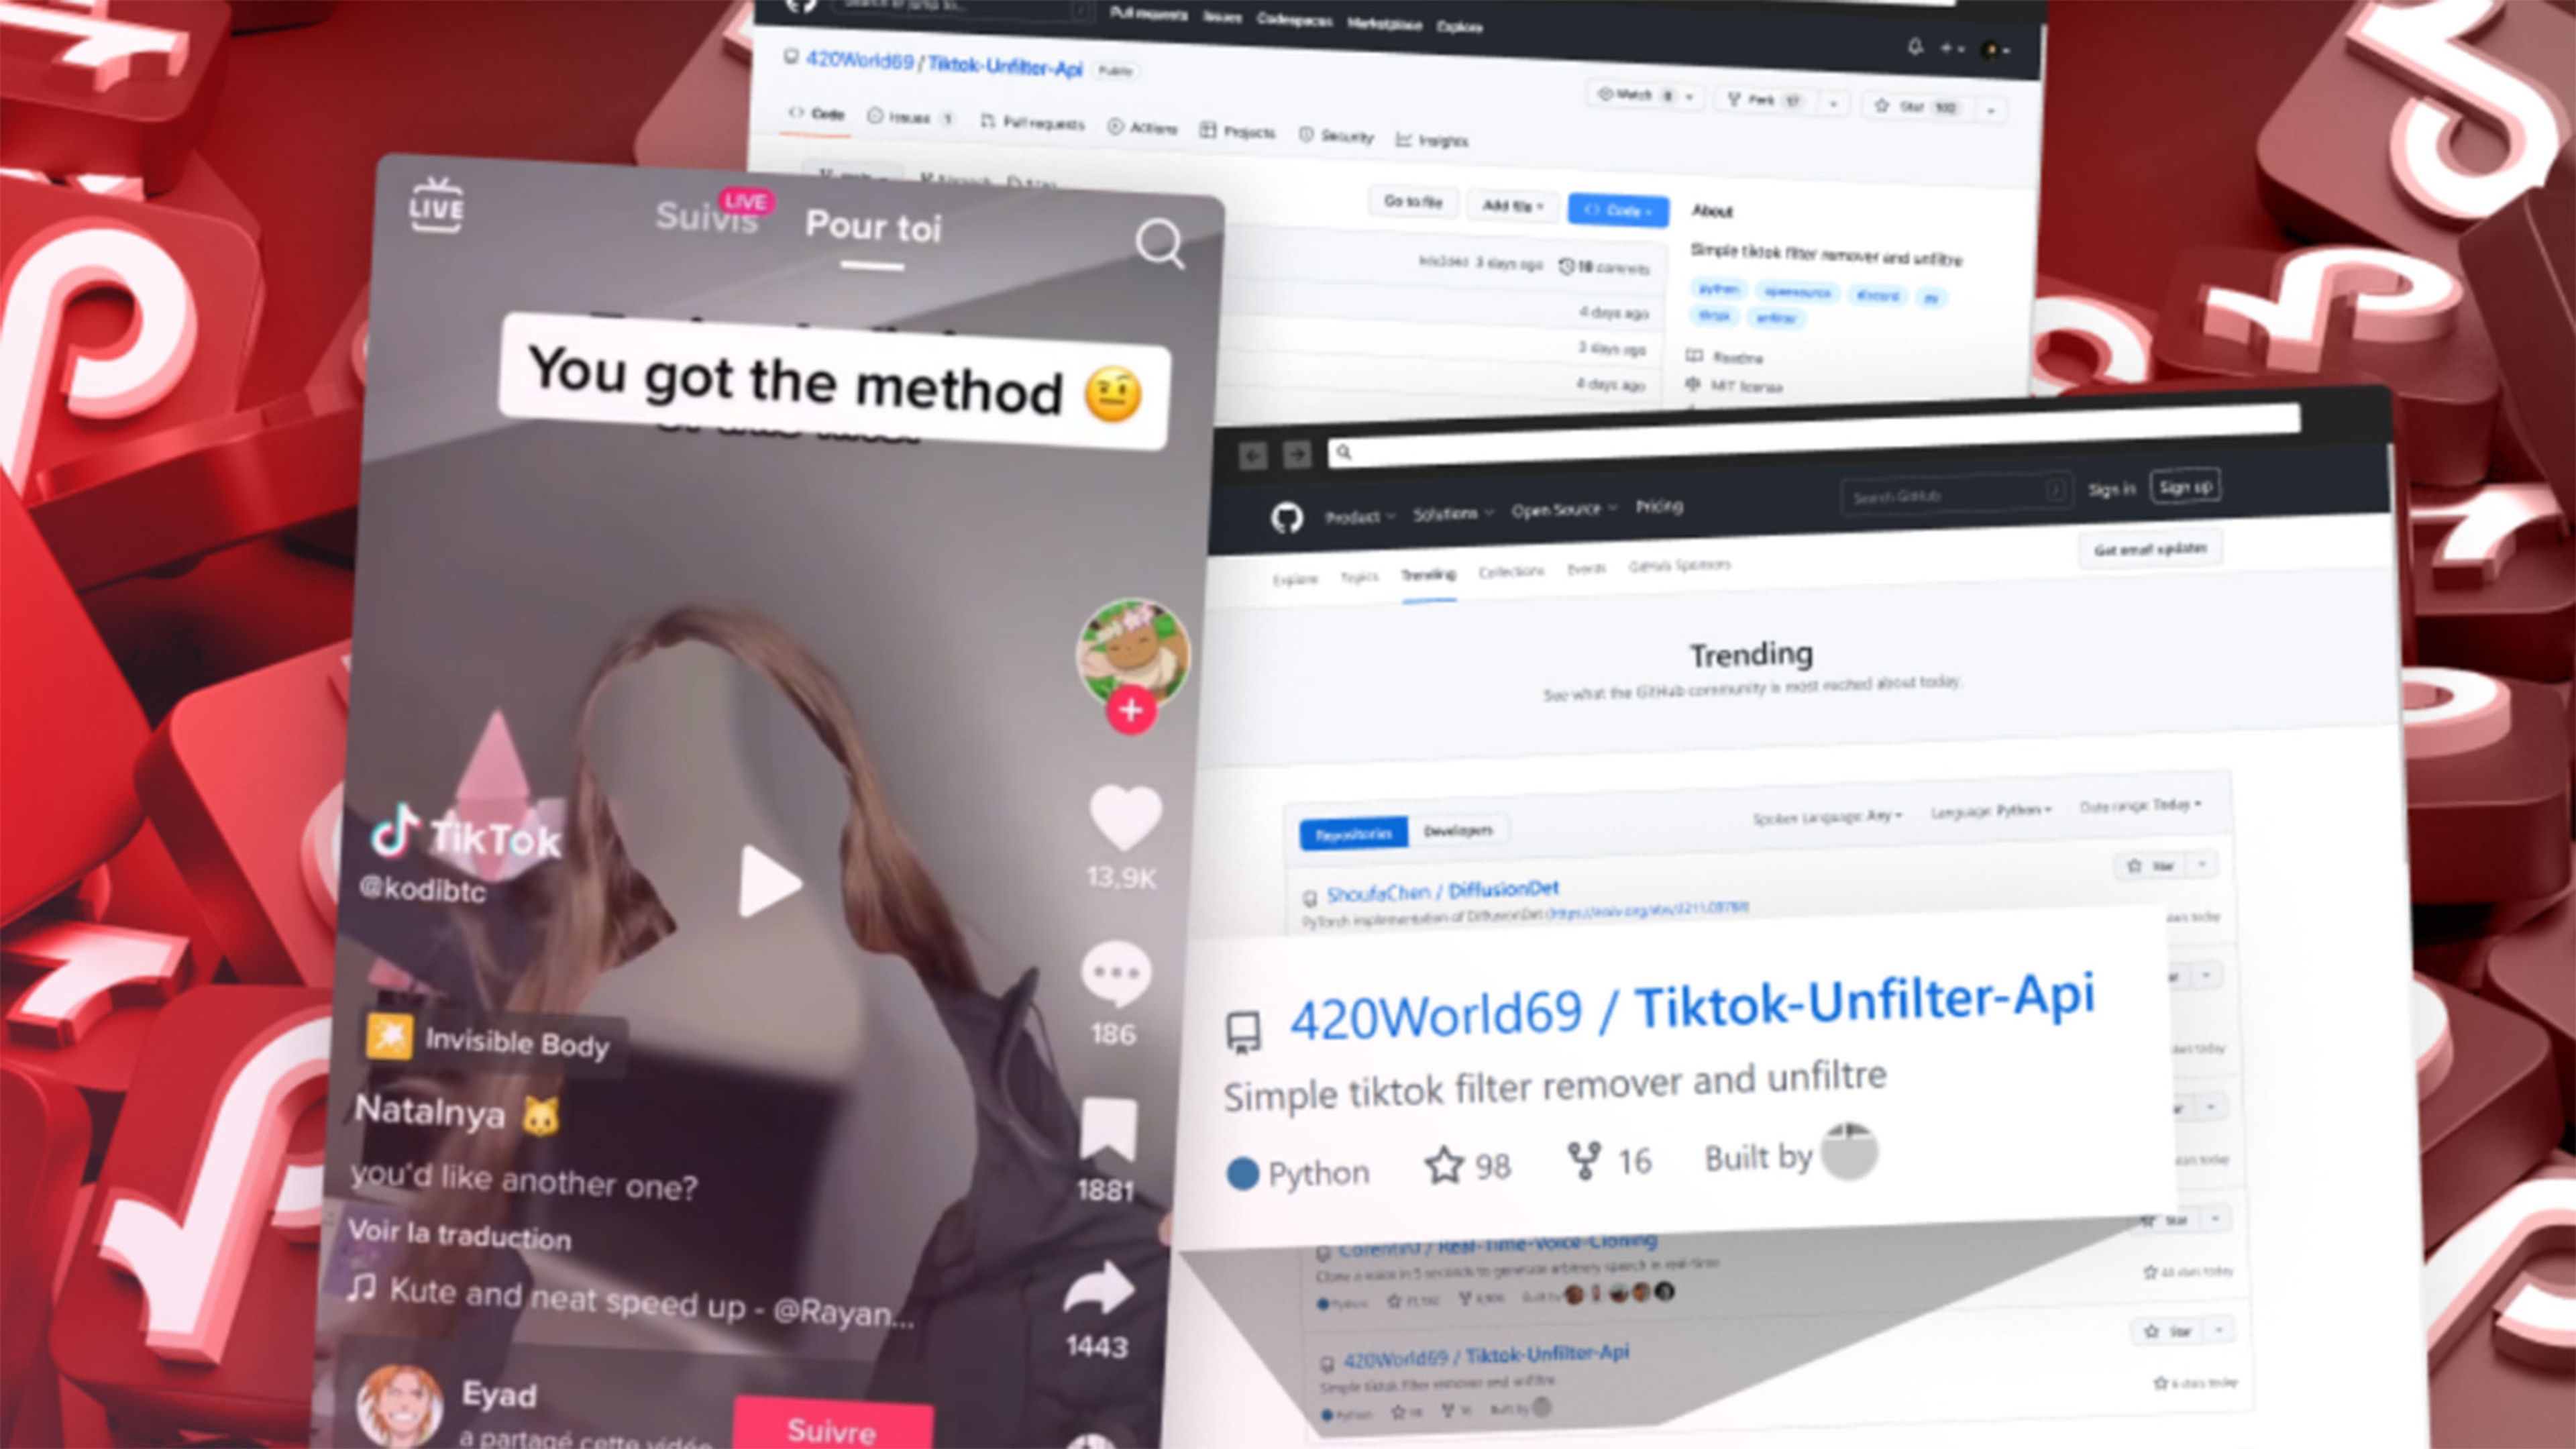 Piratas informáticos aprovechan un reto viral de TikTok para engañar a millones de usuarios